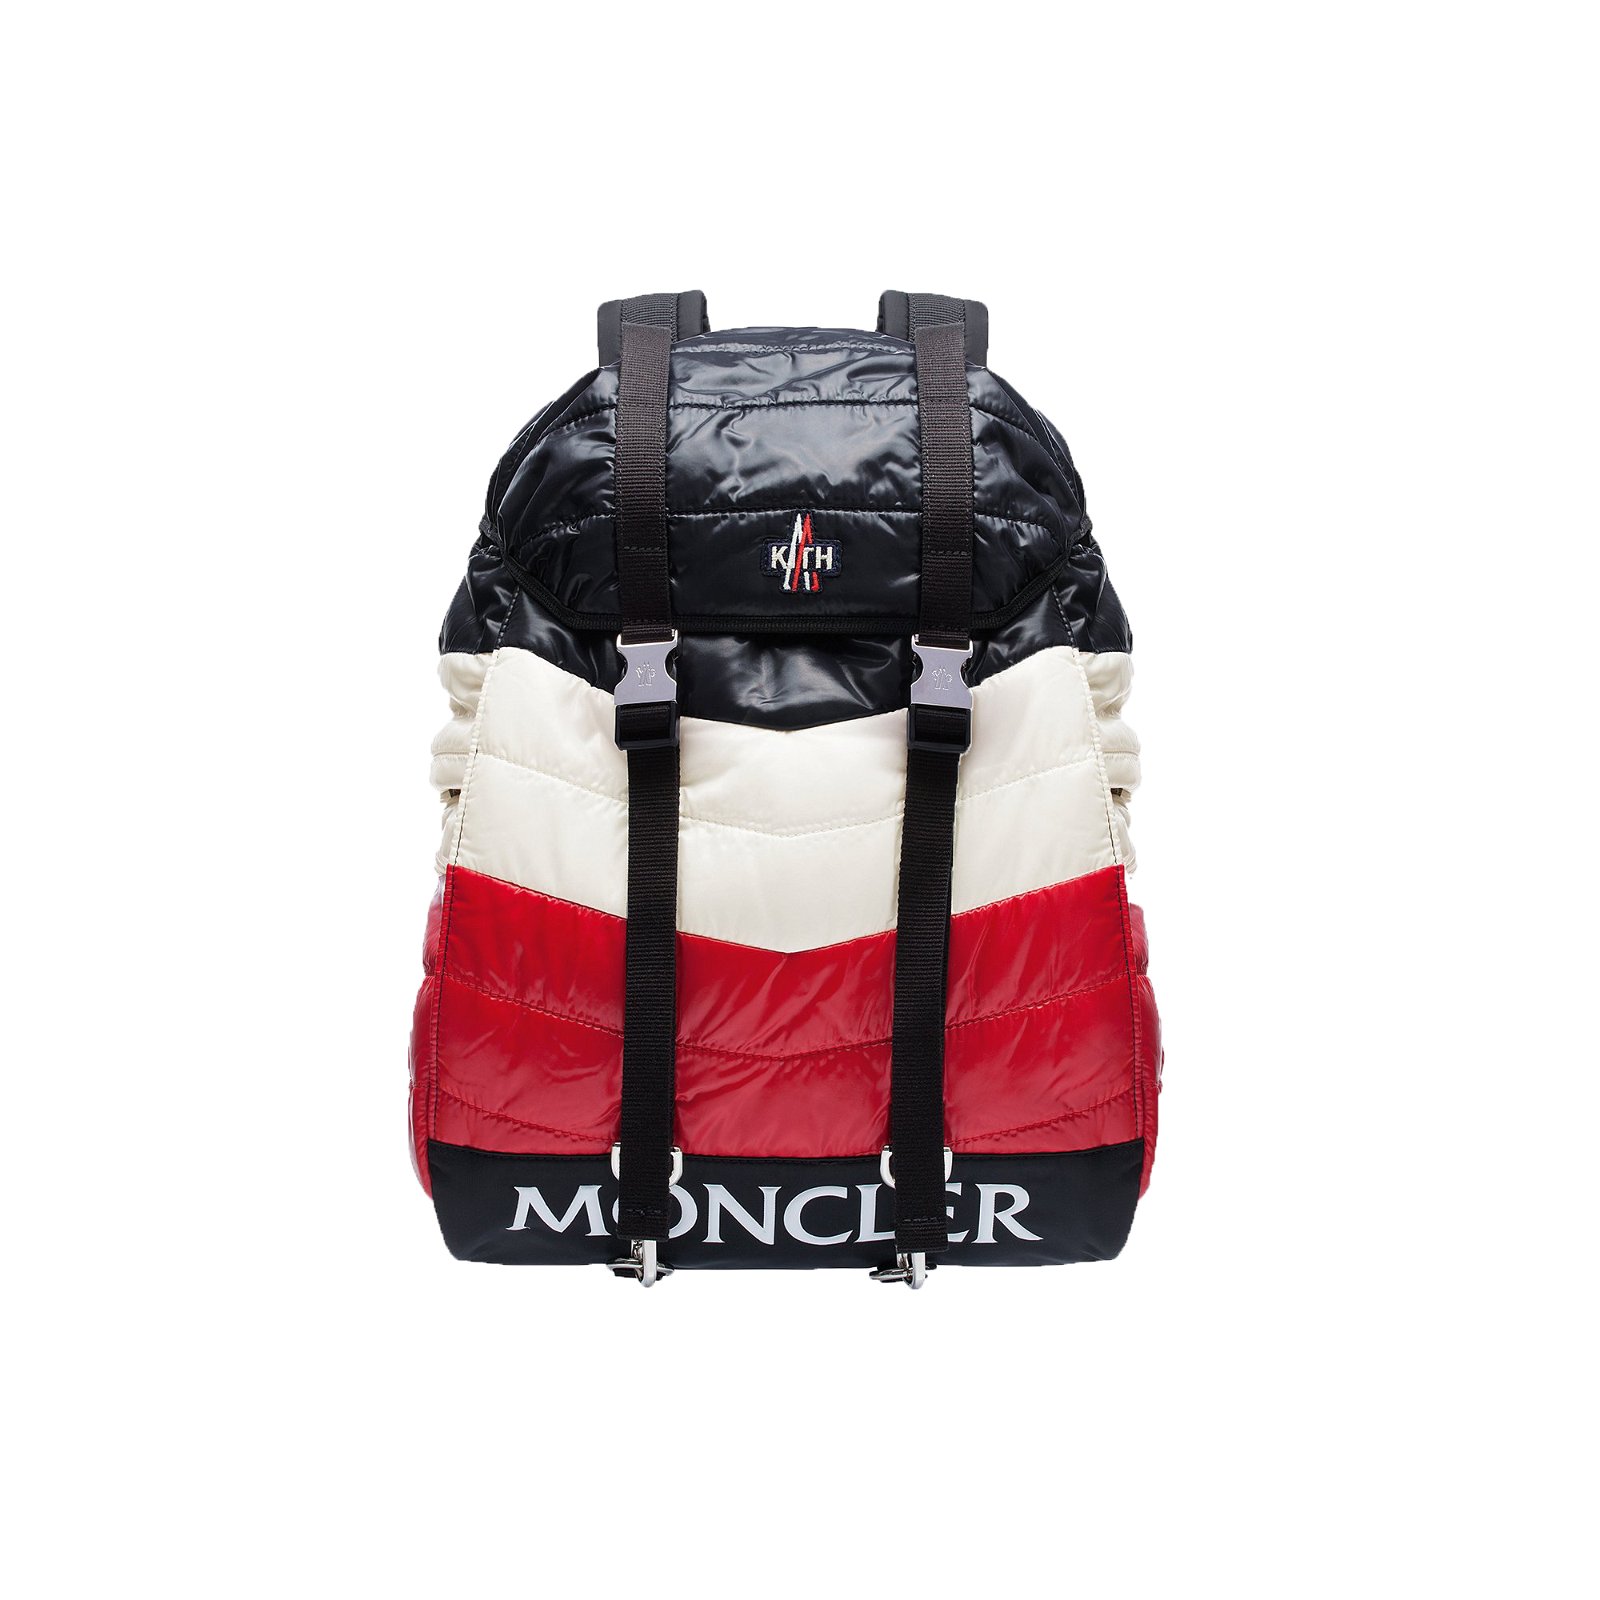 Kith Moncler Rucksack Navy/White/Red streetwear